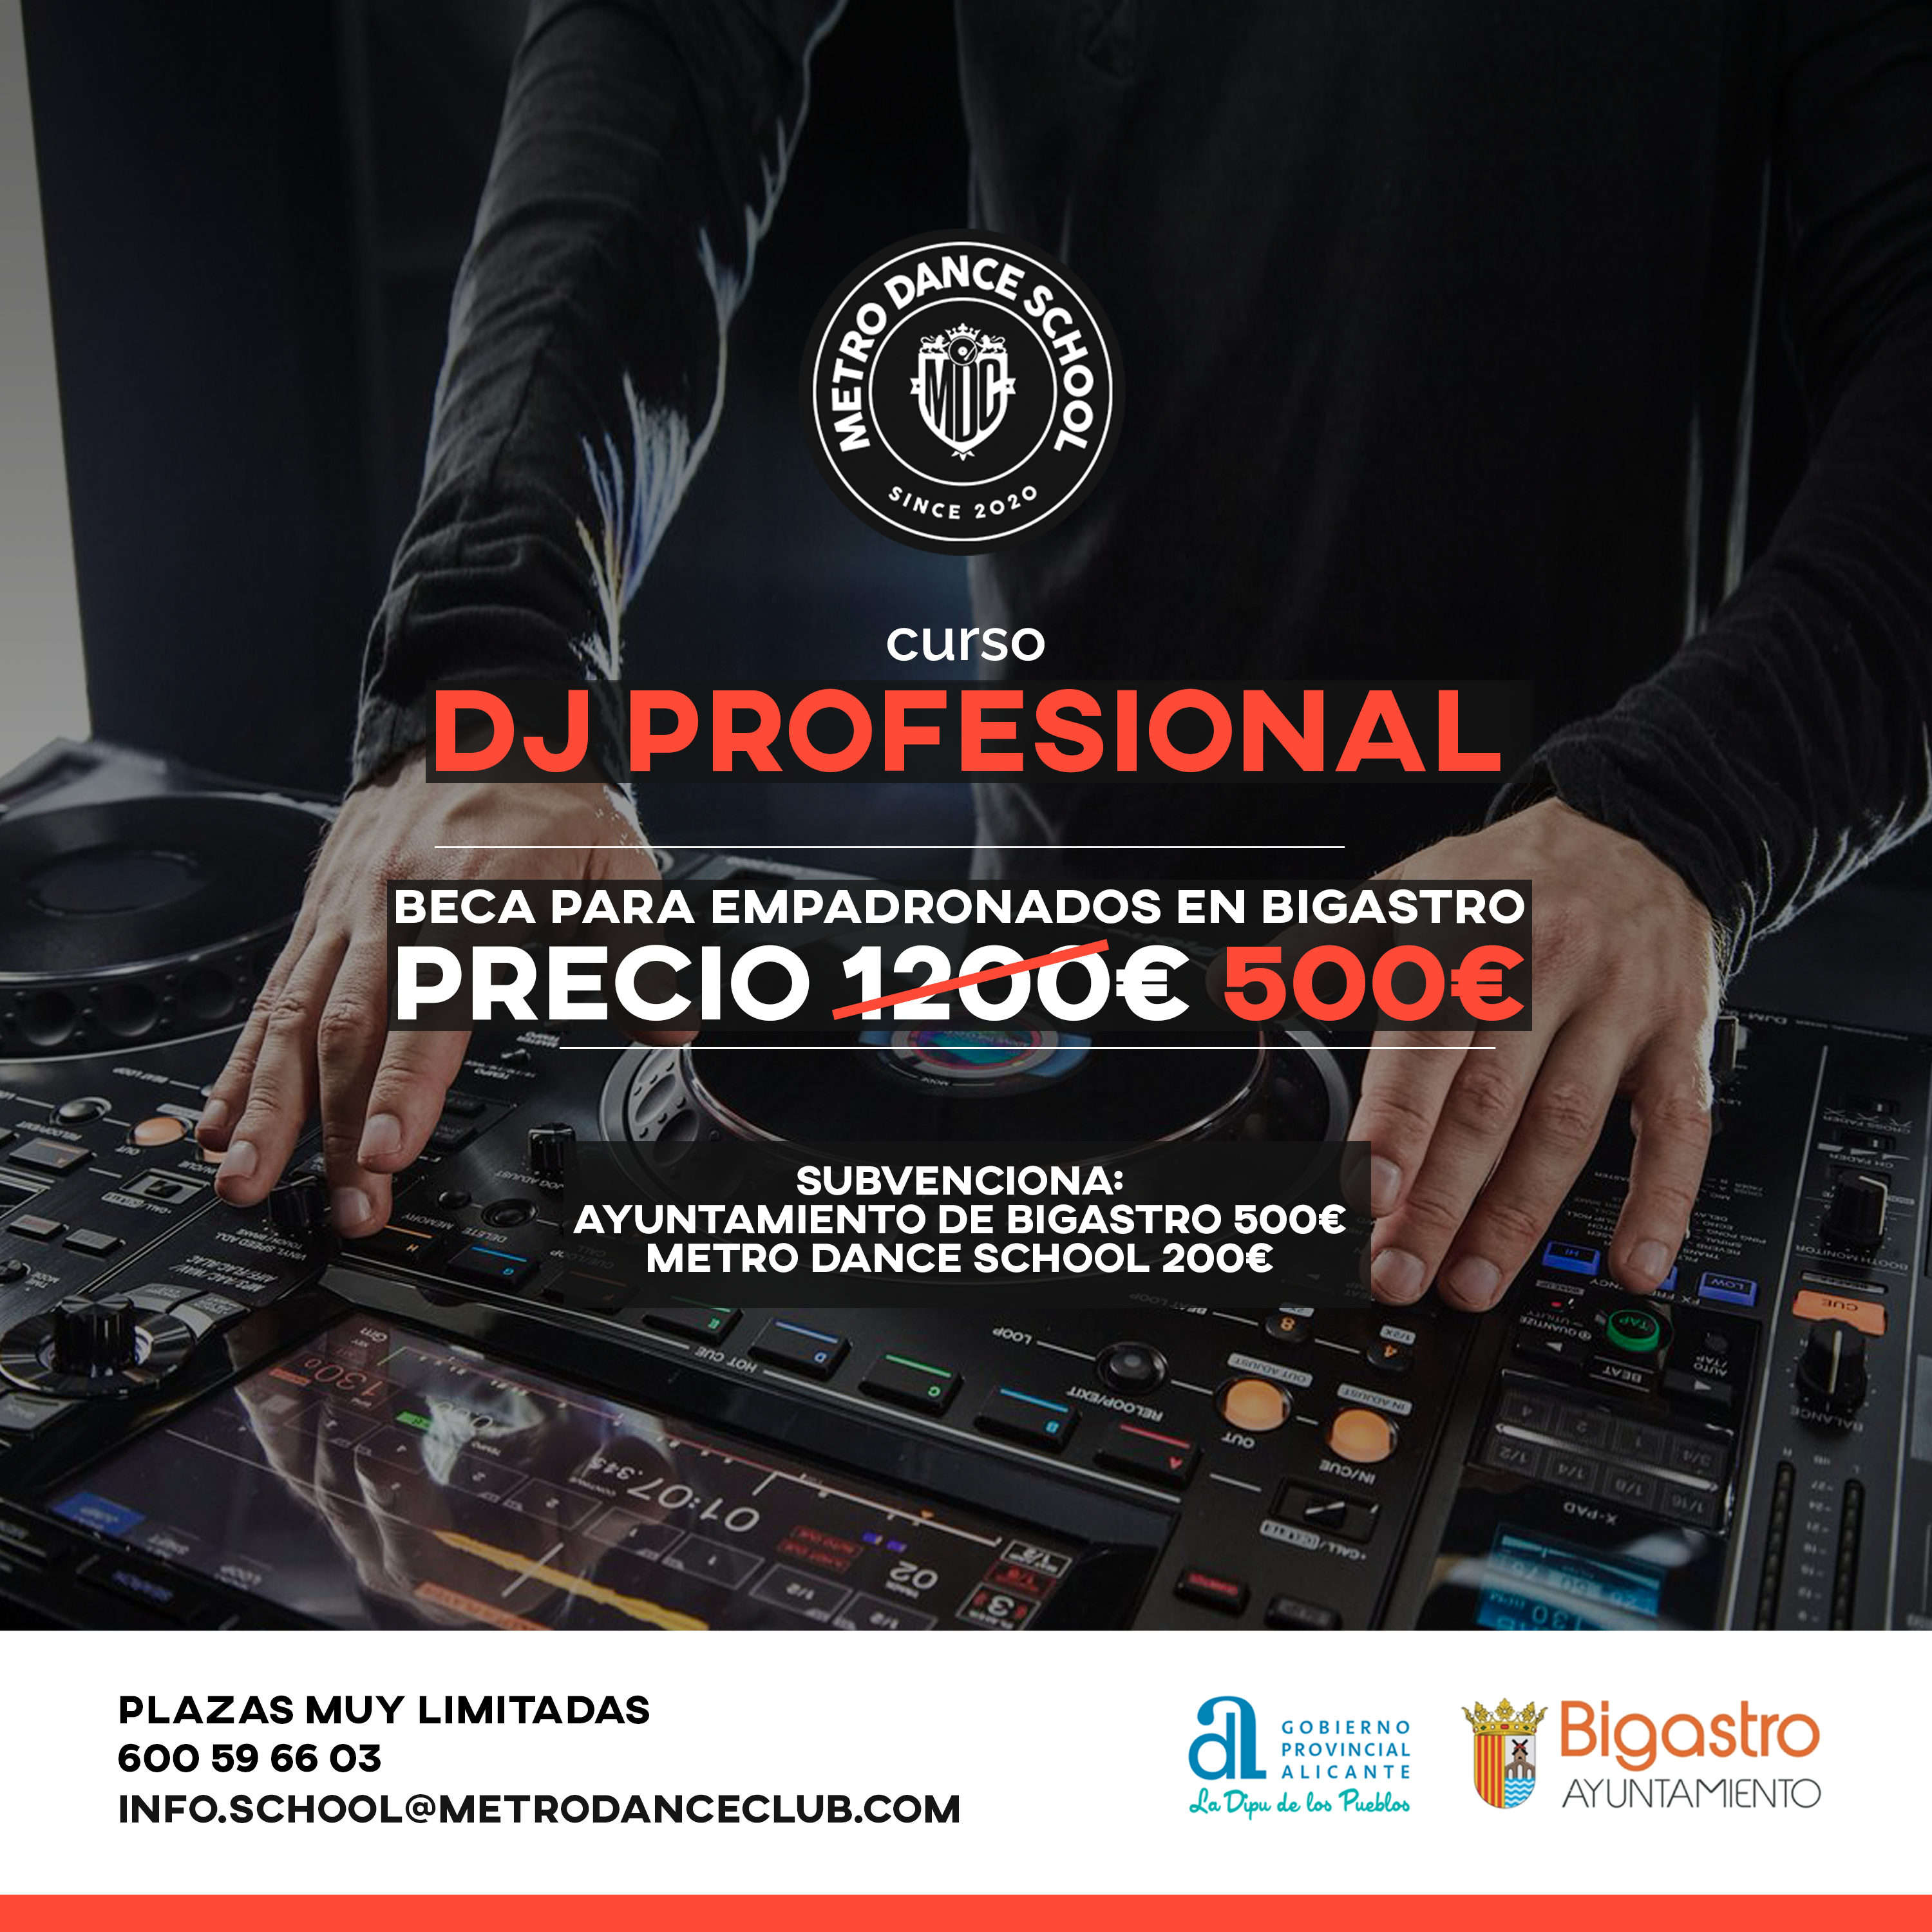 Curs DJ Professional